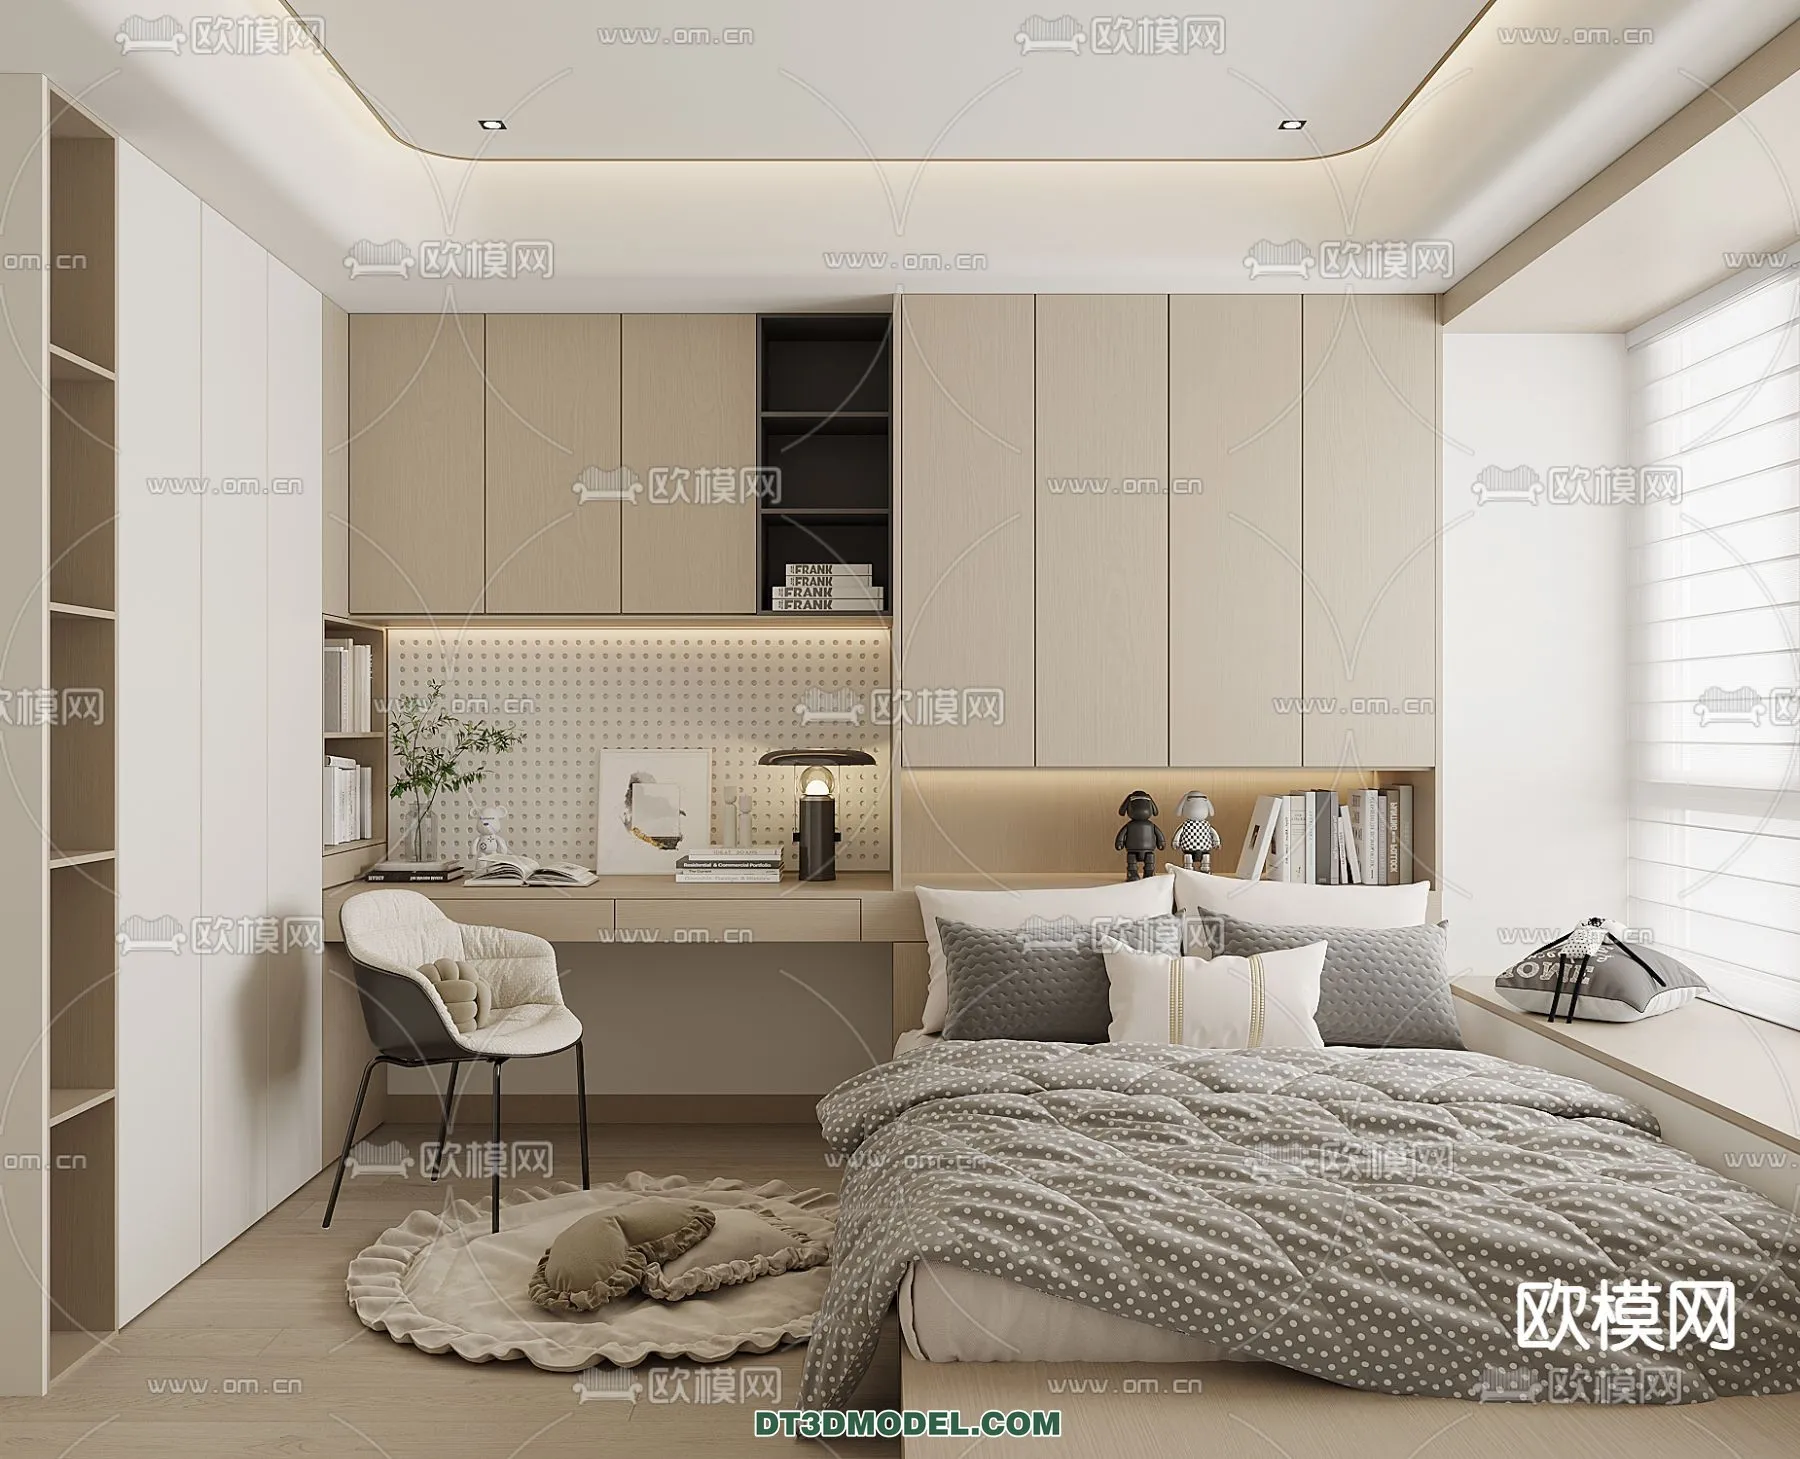 Tatami Bedroom – Japan Bedroom – 3D Scene – 070